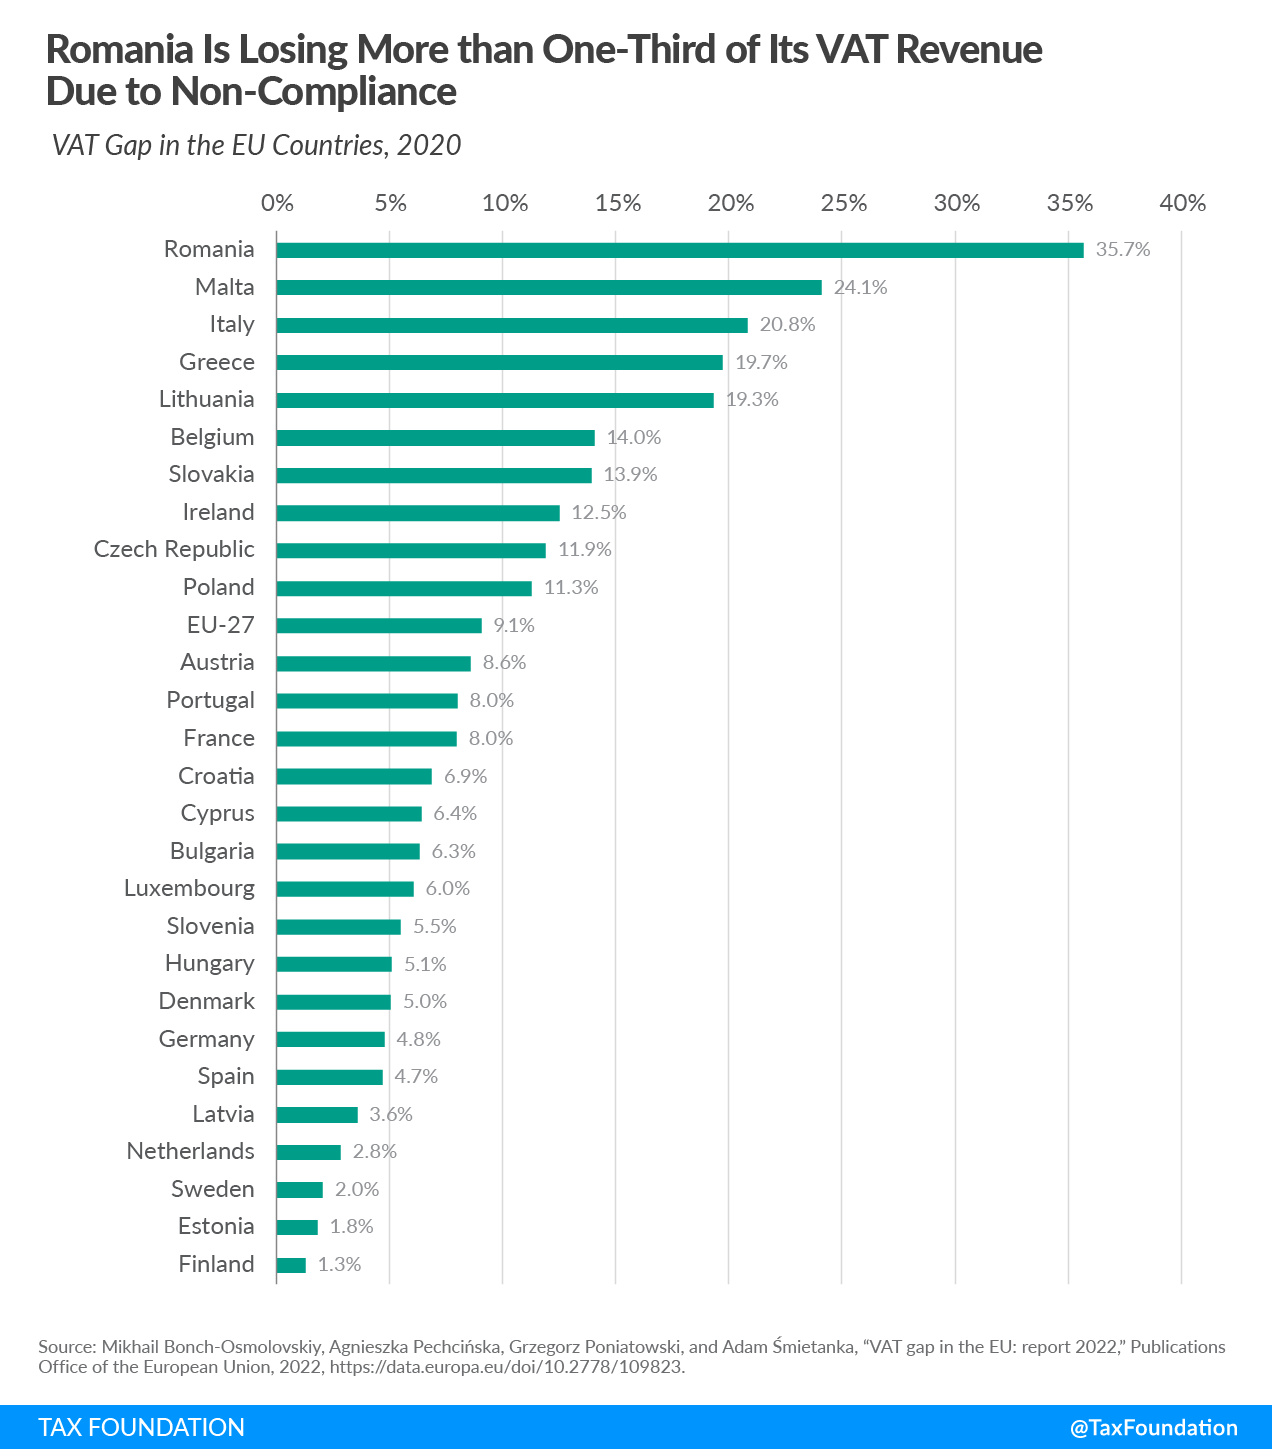 VAT Gap among EU countries